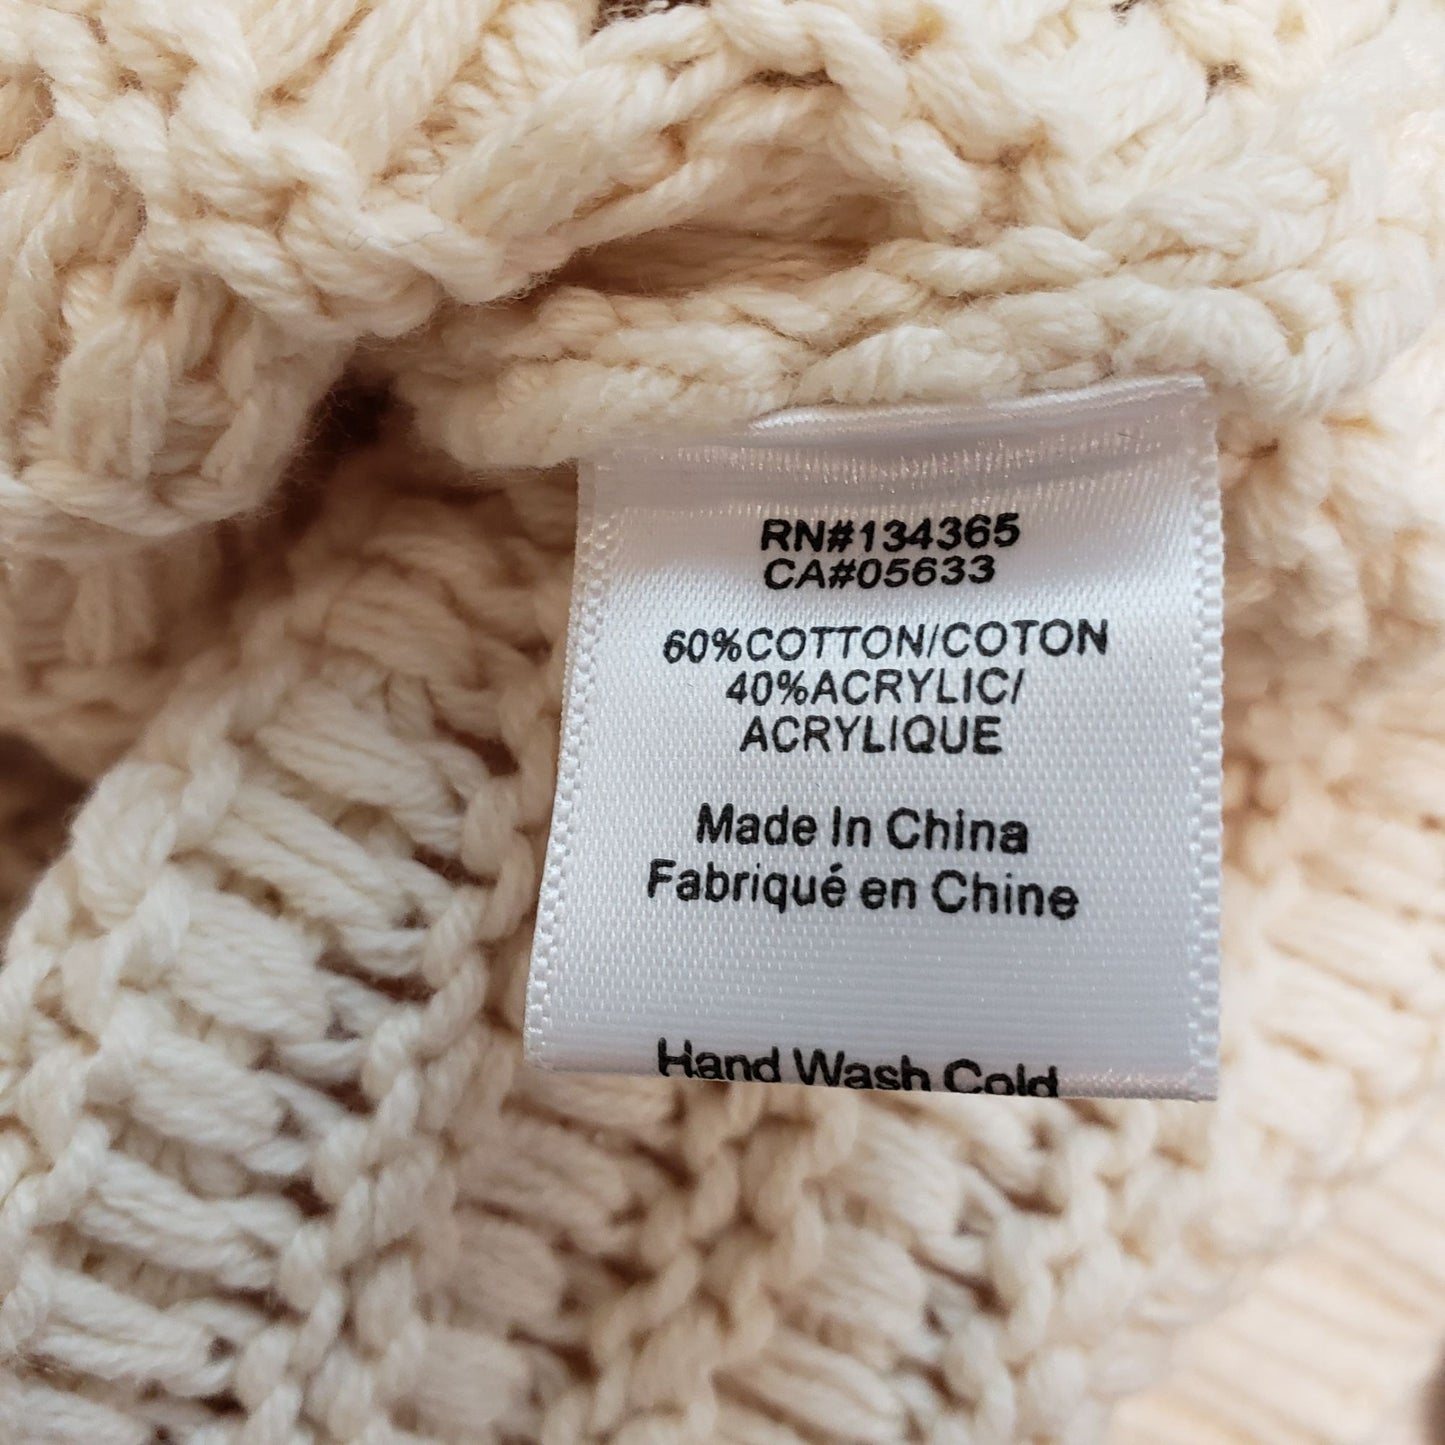 Andrea Jovine Mixed Knit Sweater Size Medium